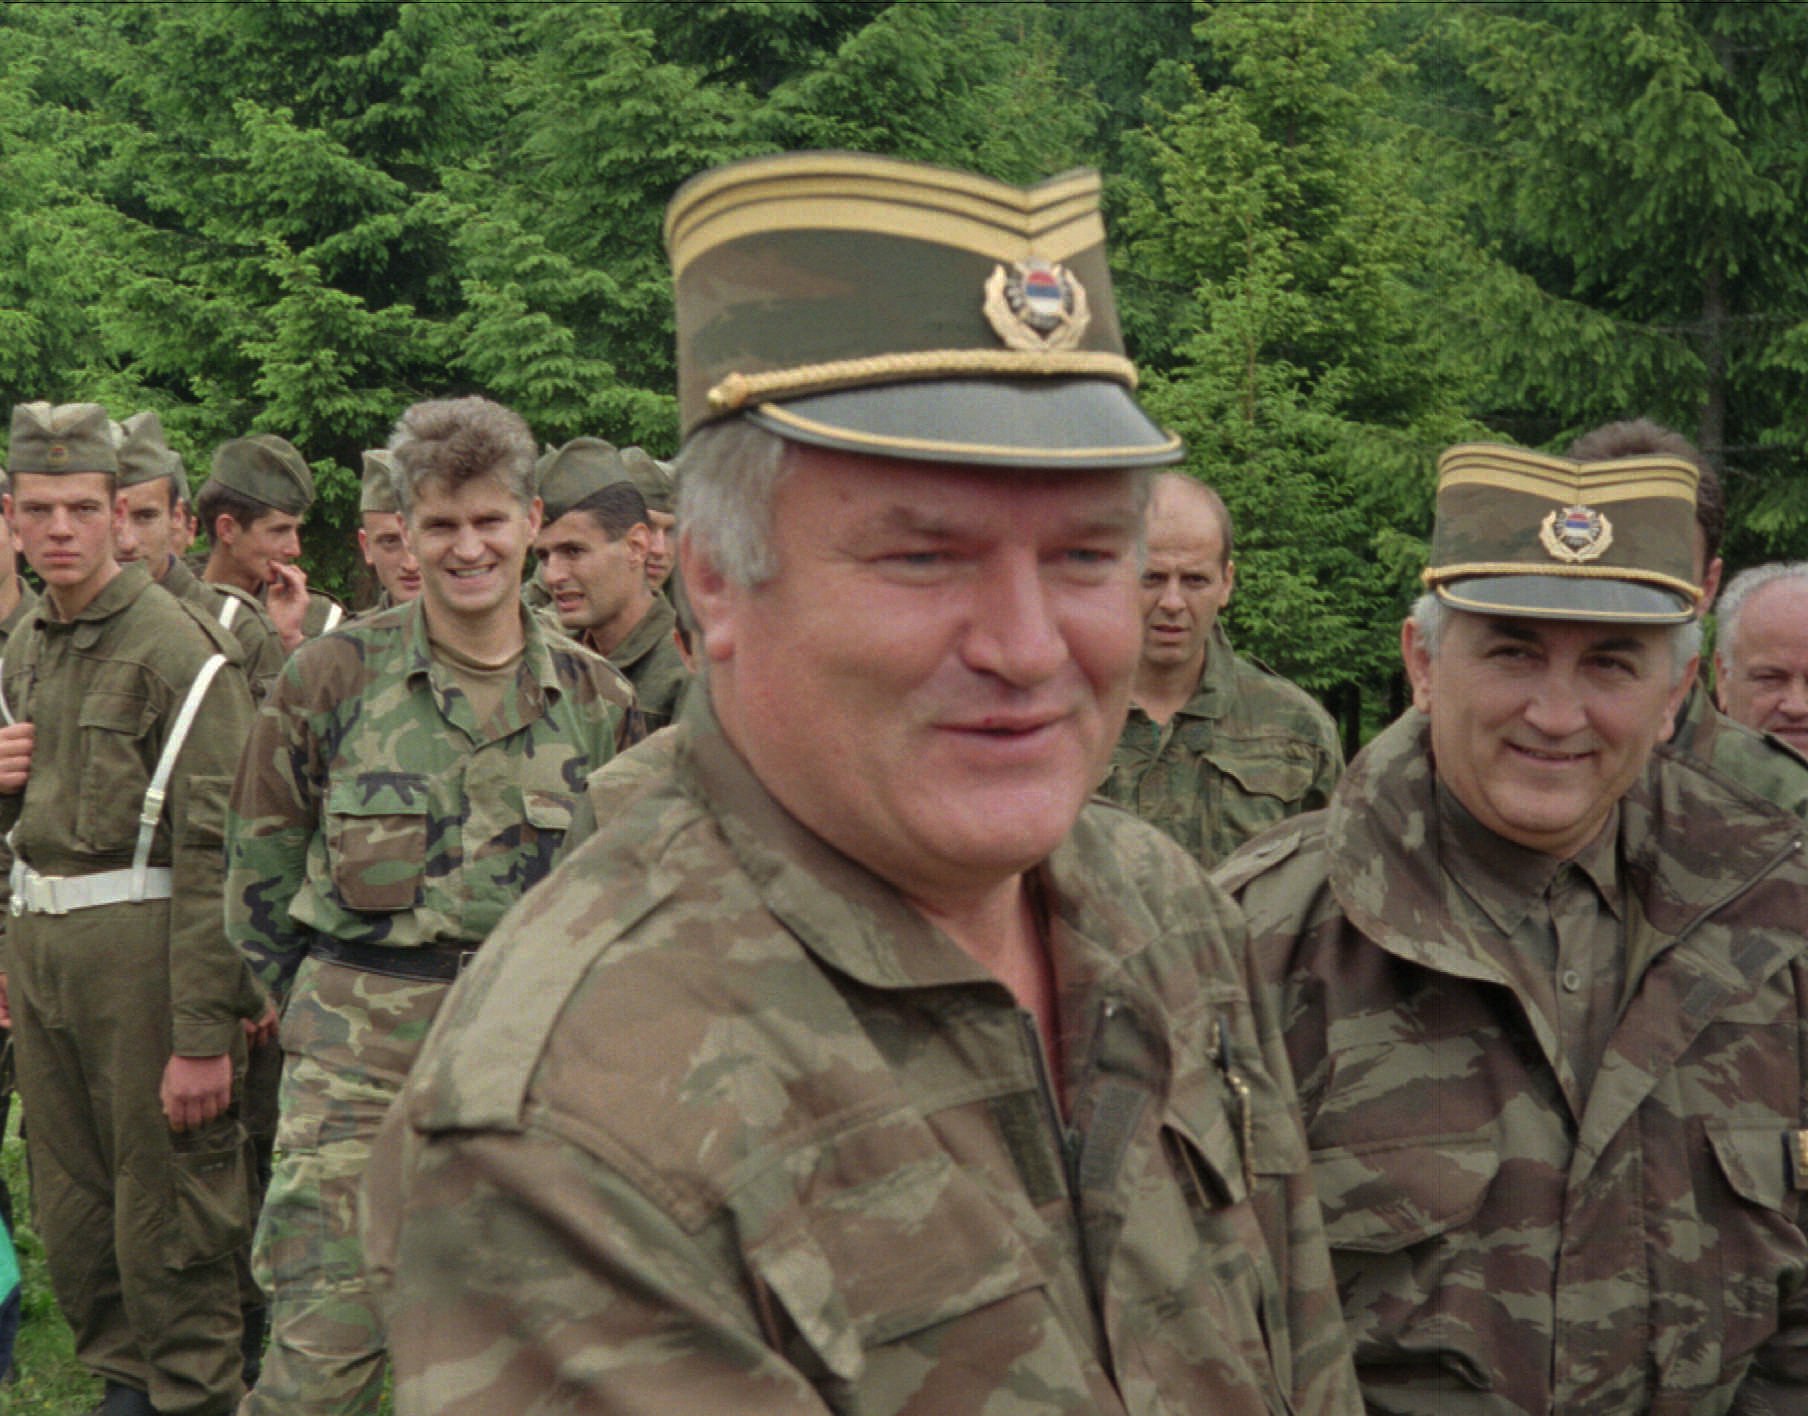 FN, Etnisk rensning, Folkmord, Forna Jugoslavien, Srebrenica, Ratko Mladic